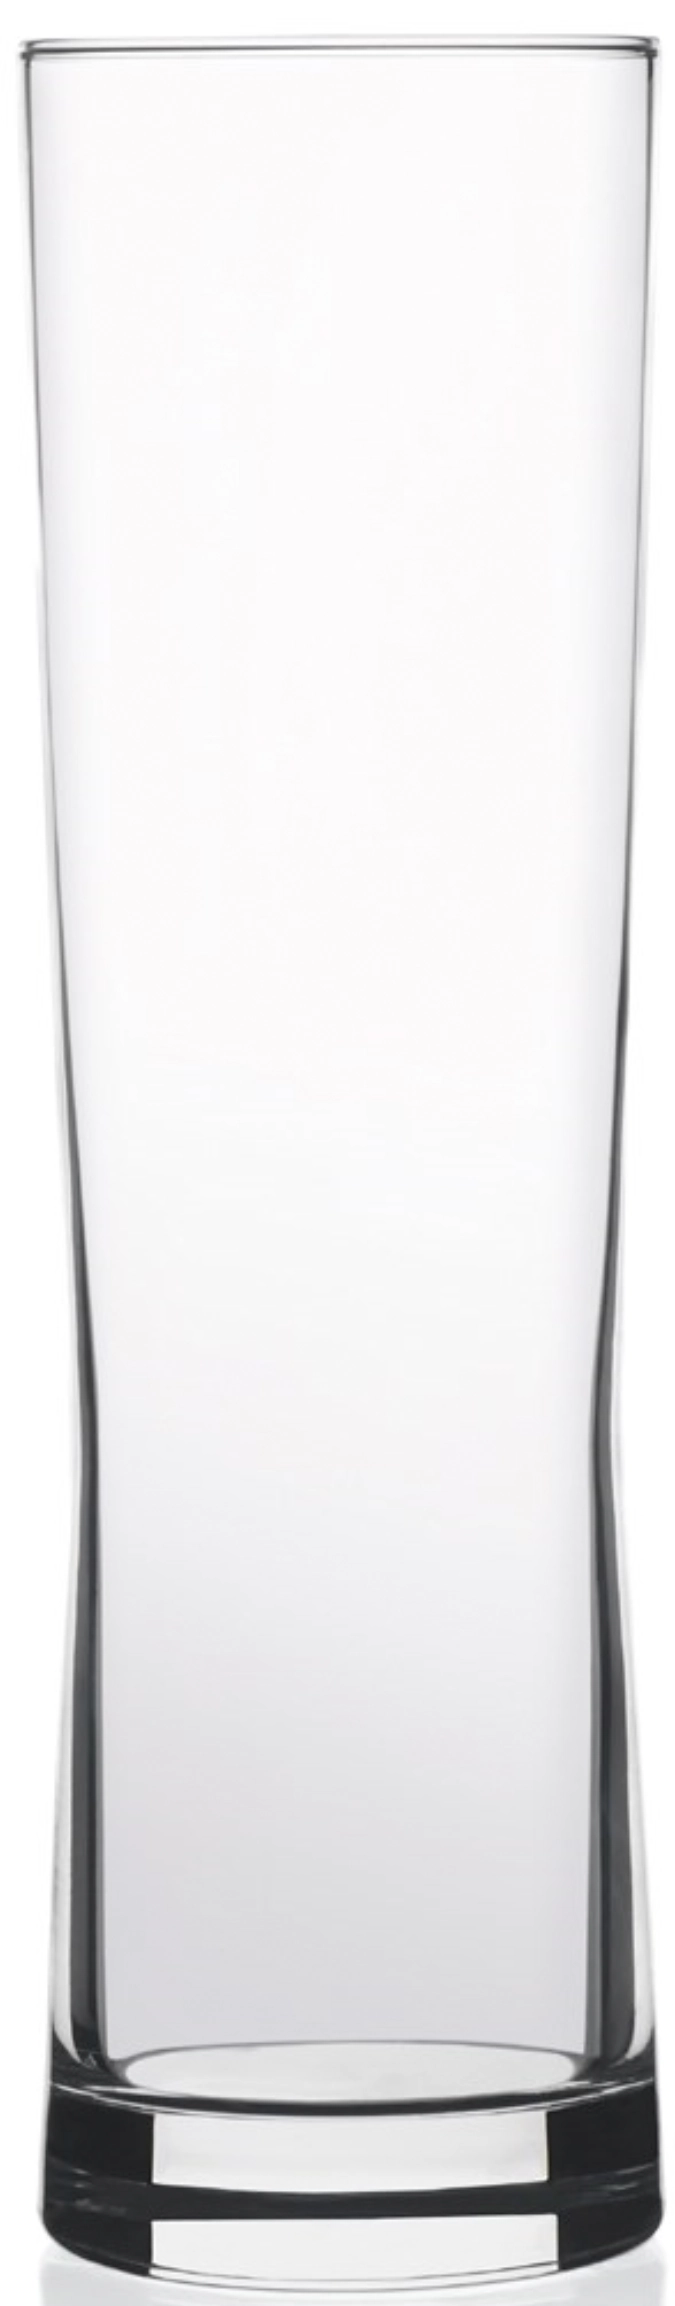 Fresh Glas-Becher 31cl, 2.5dl. /-/ 18.9cm